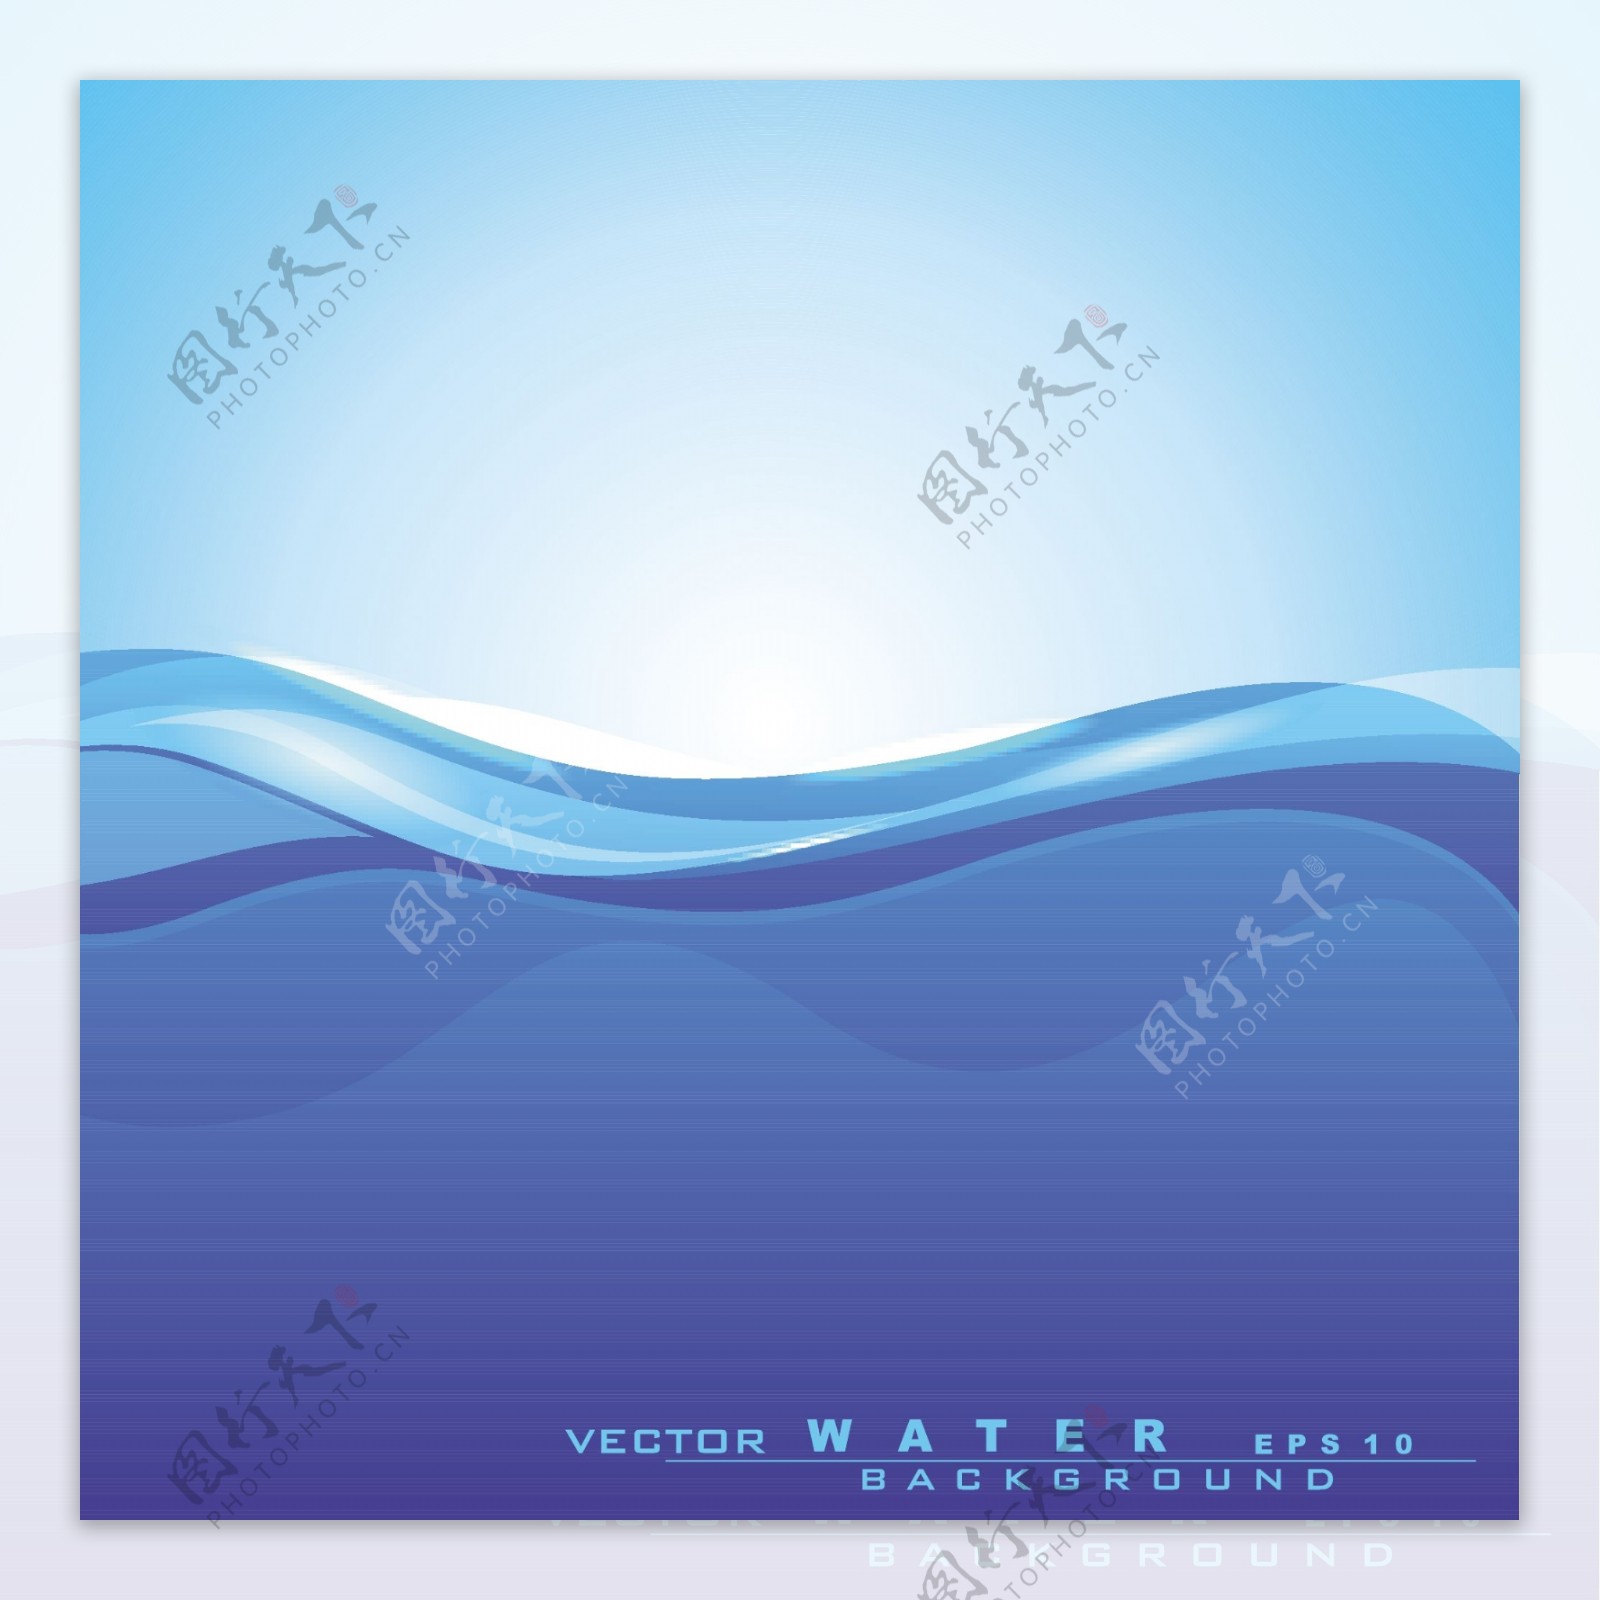 摘要背景与水波和节约用水的概念及其他用途的阳光